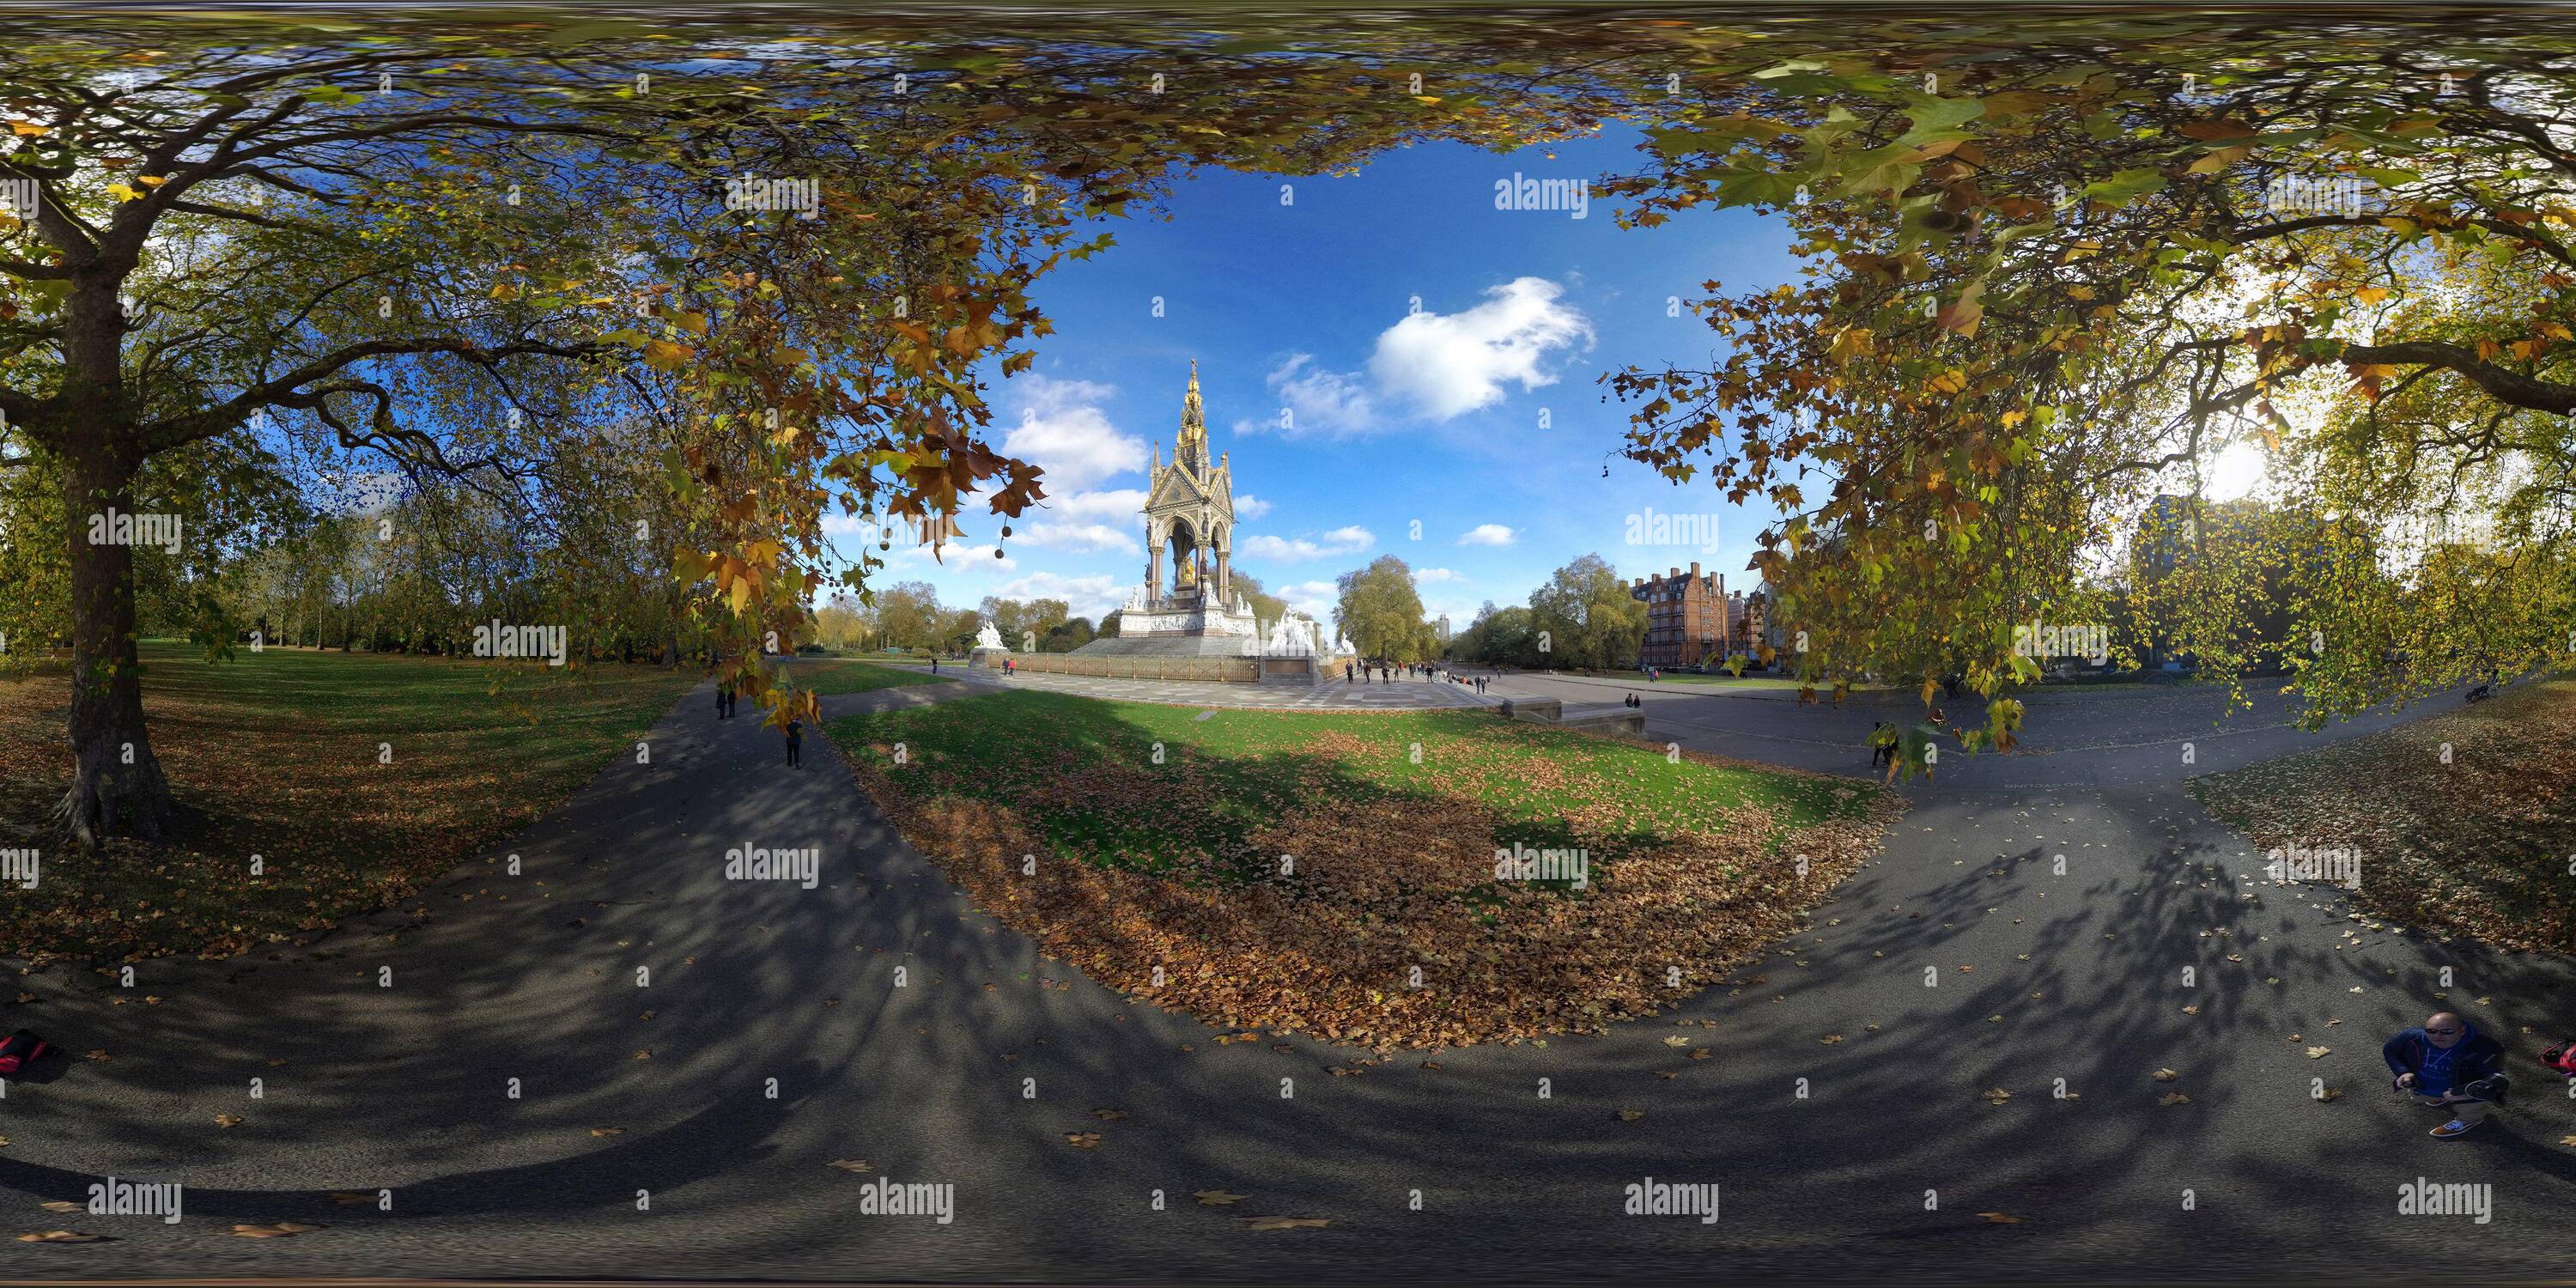 Vue panoramique à 360° de THE ALBERT MEMORIAL À LONDRES IMAGE CRÉDIT : MARK PAIN / ALAMY STOCK IMAGE